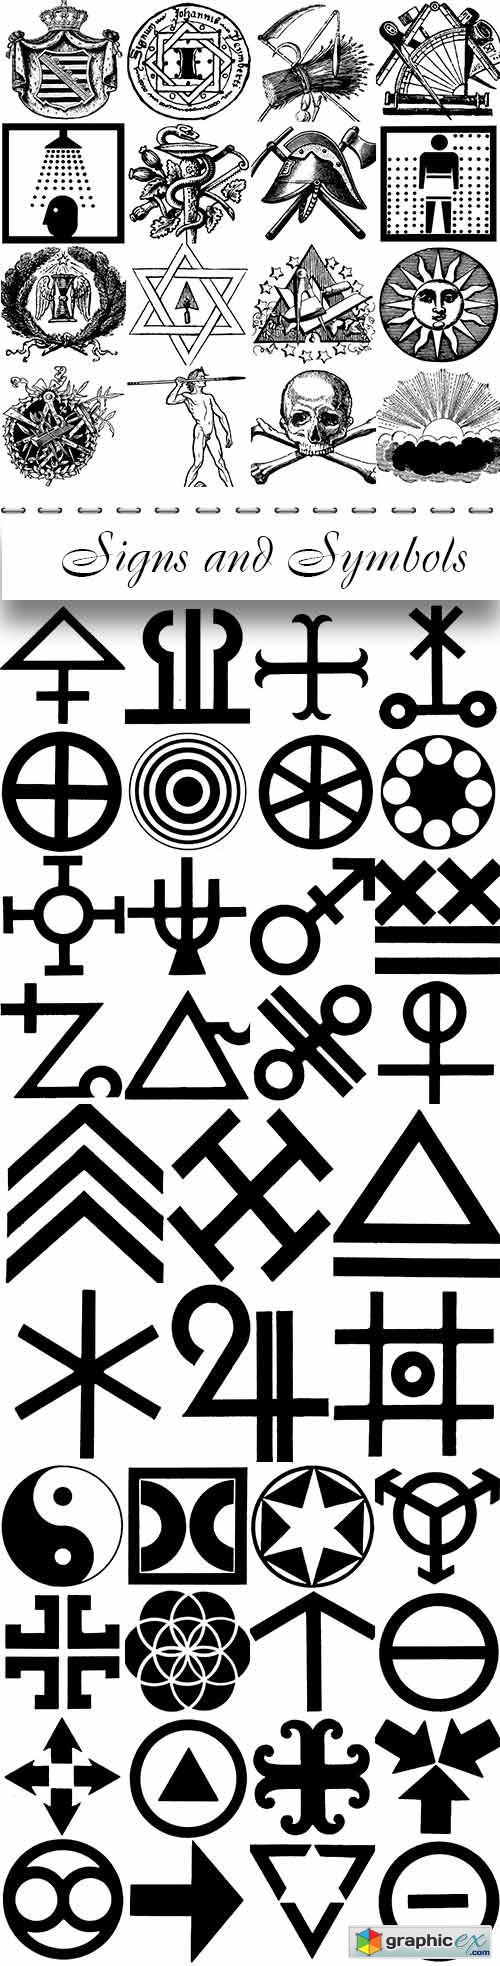 PEPIN PRESS Signs and Symbols